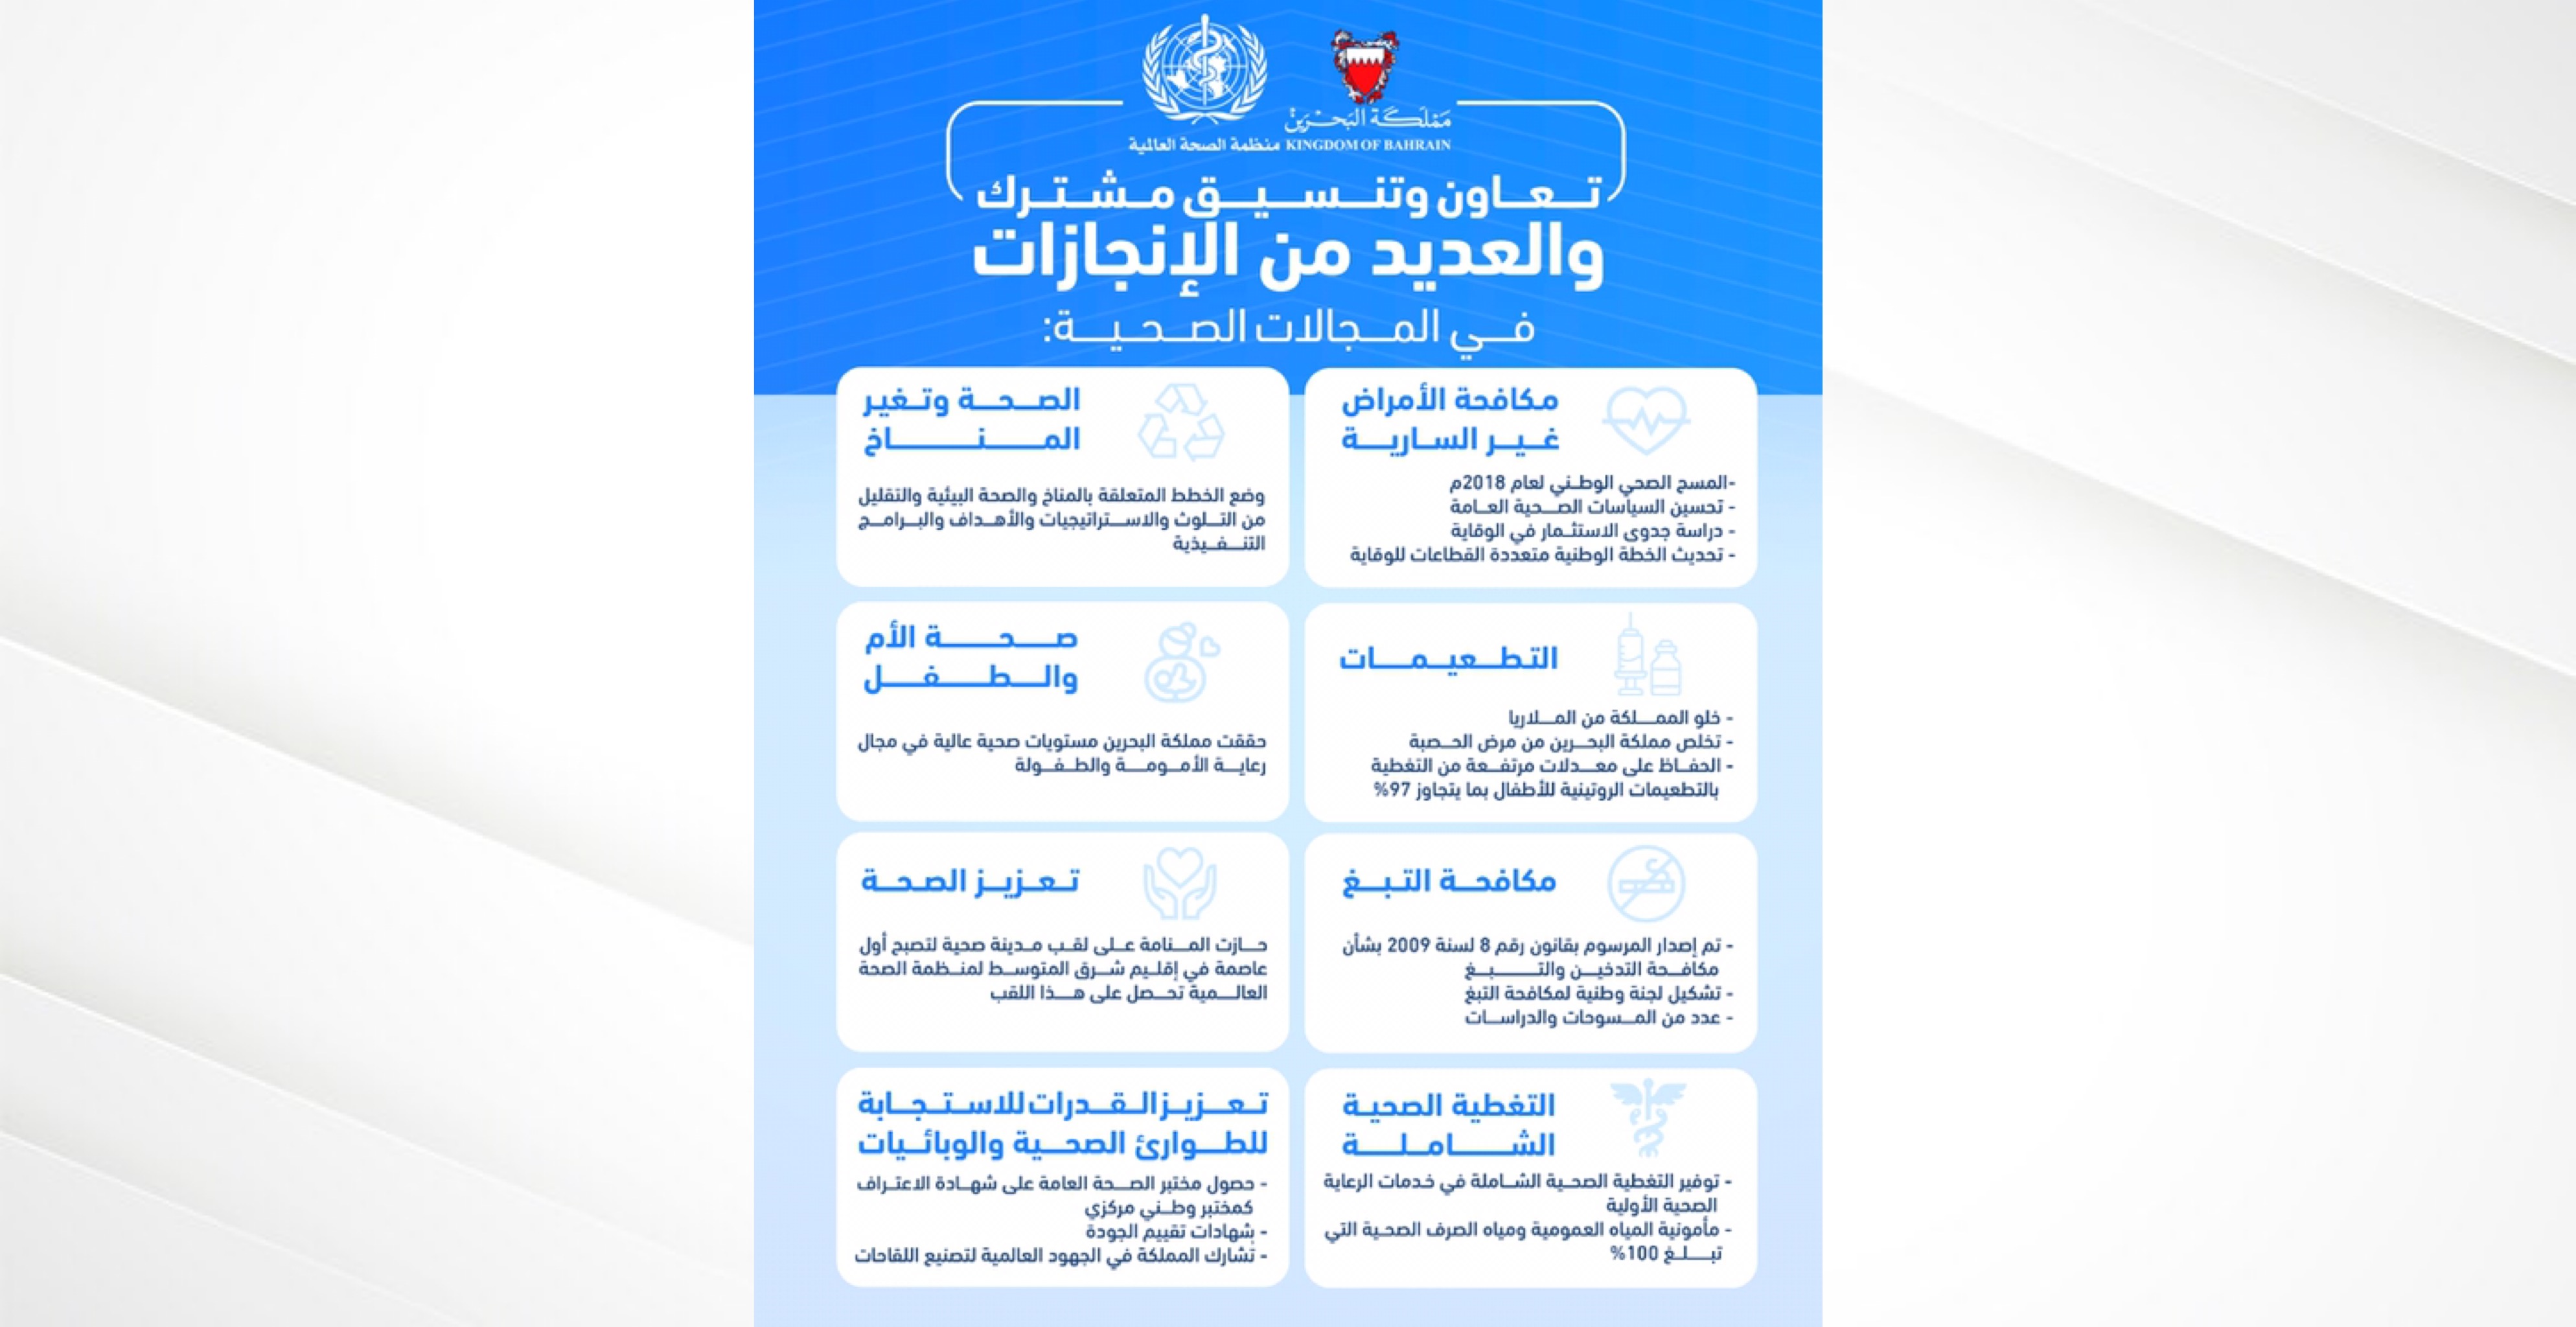 مملكة البحرين تُحقق العديد من الإنجازات والمكاسب في المجال الصحي بالتعاون والتنسيق المشترك مع منظمة الصحة العالمية